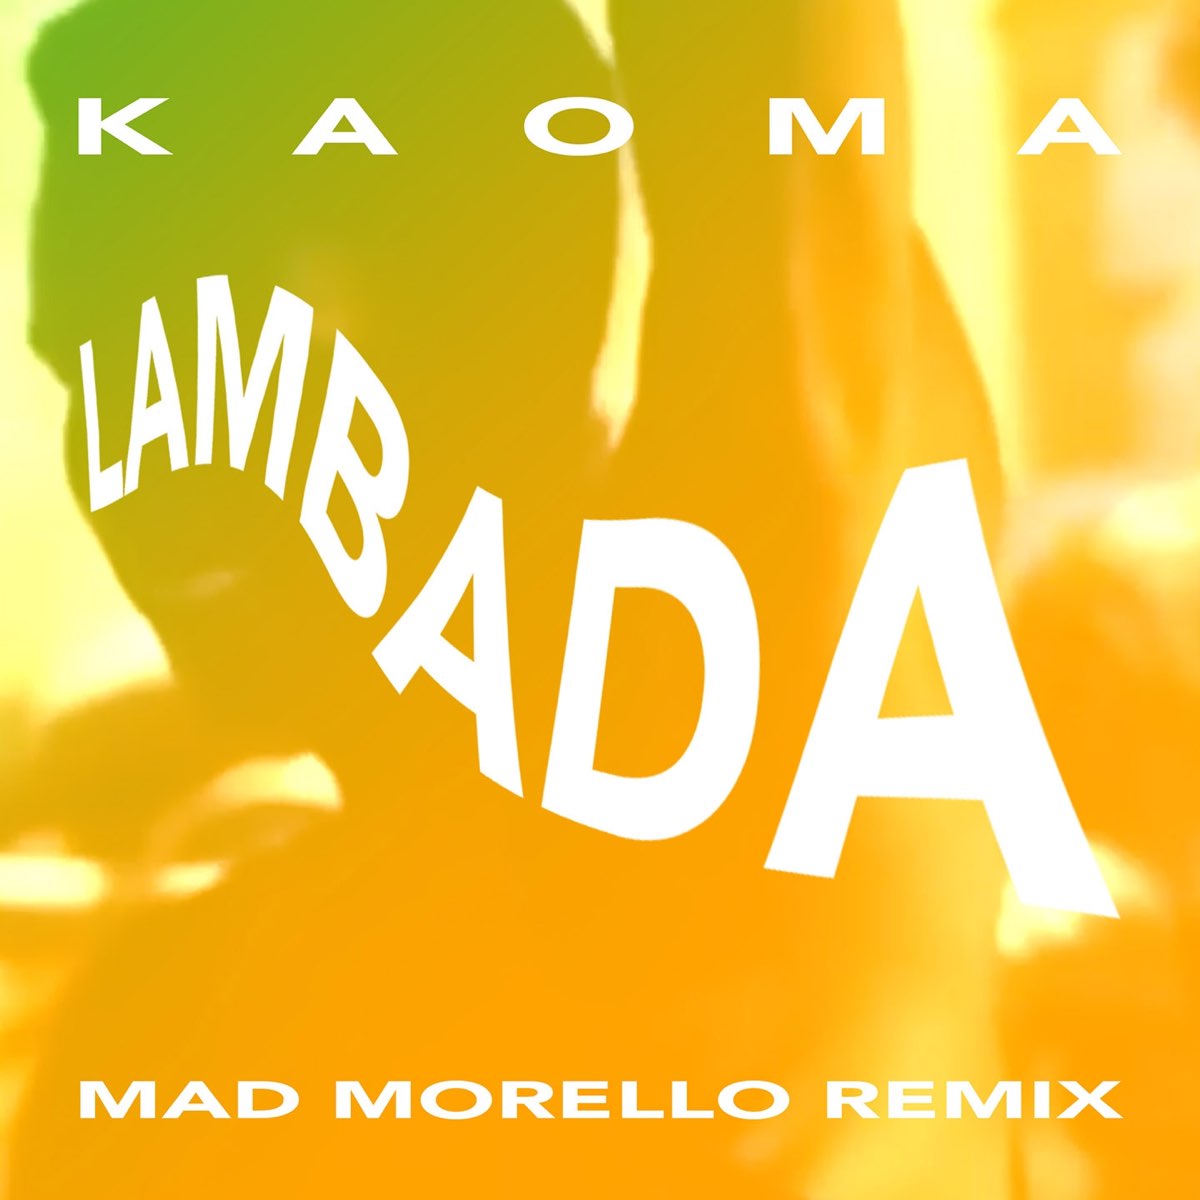 La Lambada (Mad Morello Remix) - Single by Kaoma on Apple Music